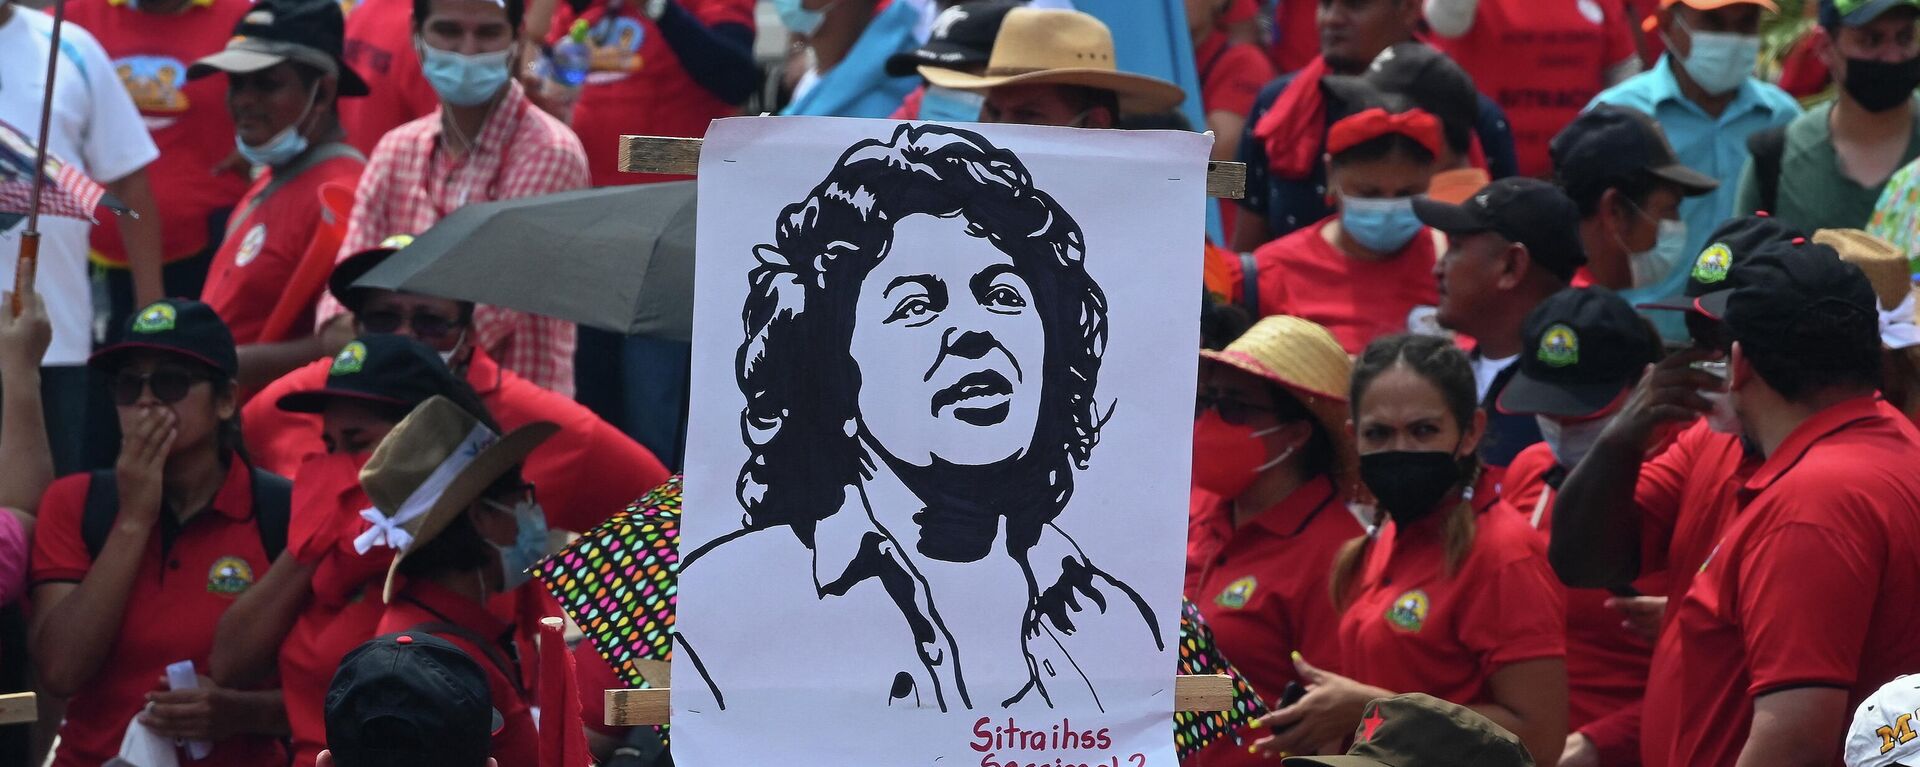 Empleados del Sindicato de Trabajadores del Instituto Hondureño del Seguro Social sostienen un cartel de la líder indígena asesinada Berta Cáceres durante la manifestación del Primero de Mayo (Día del Trabajo) en San Pedro Sula, Honduras, el 1 de mayo de 2022 - Sputnik Mundo, 1920, 18.05.2022